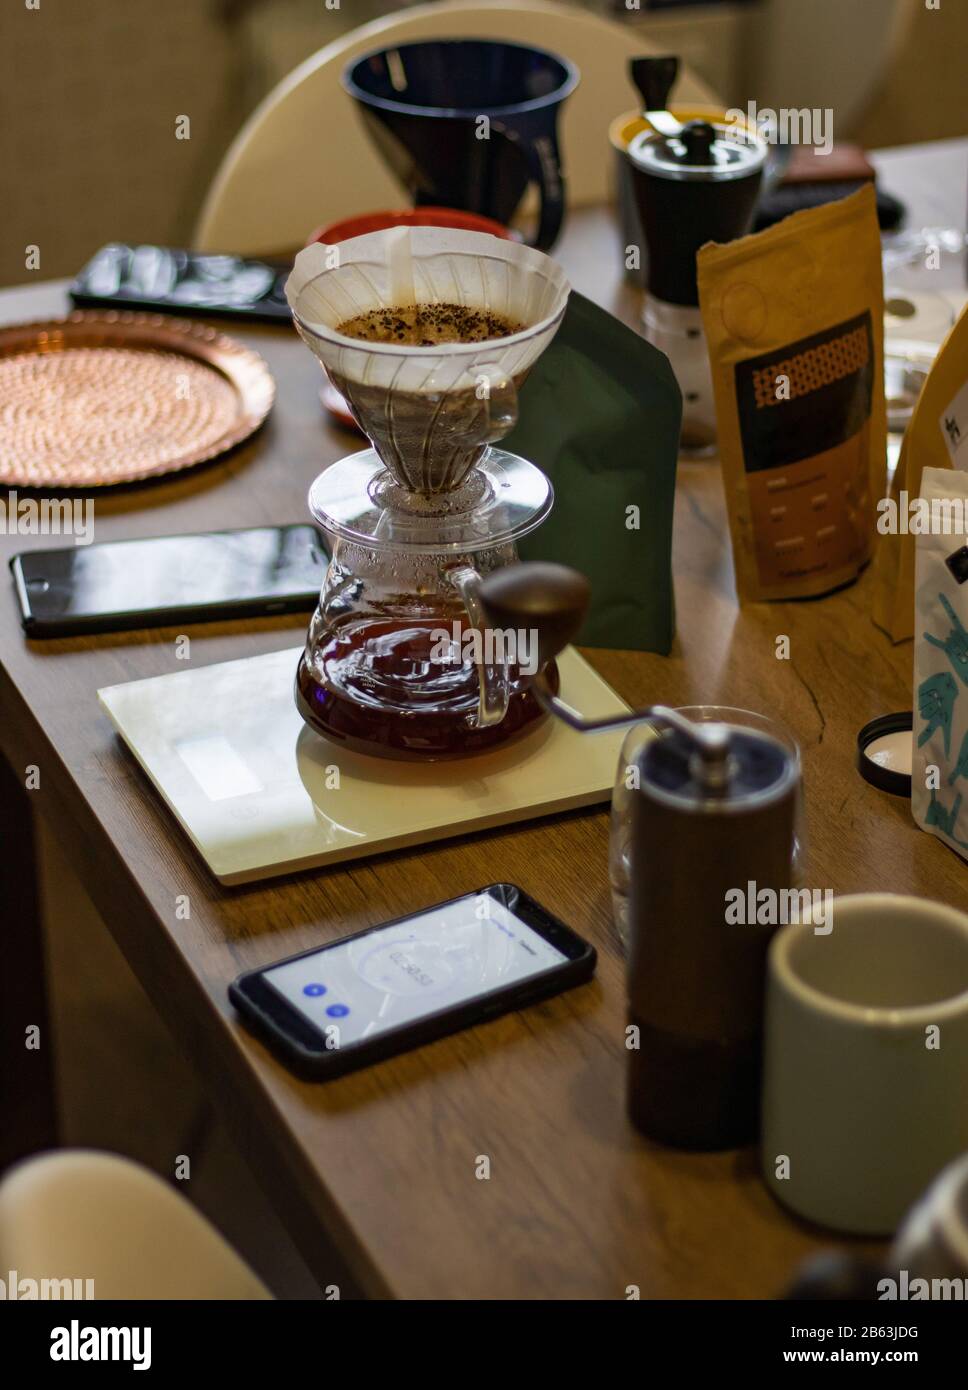 Autre préparation manuelle du café. Accessoires et articles pour la préparation de café alternative Banque D'Images